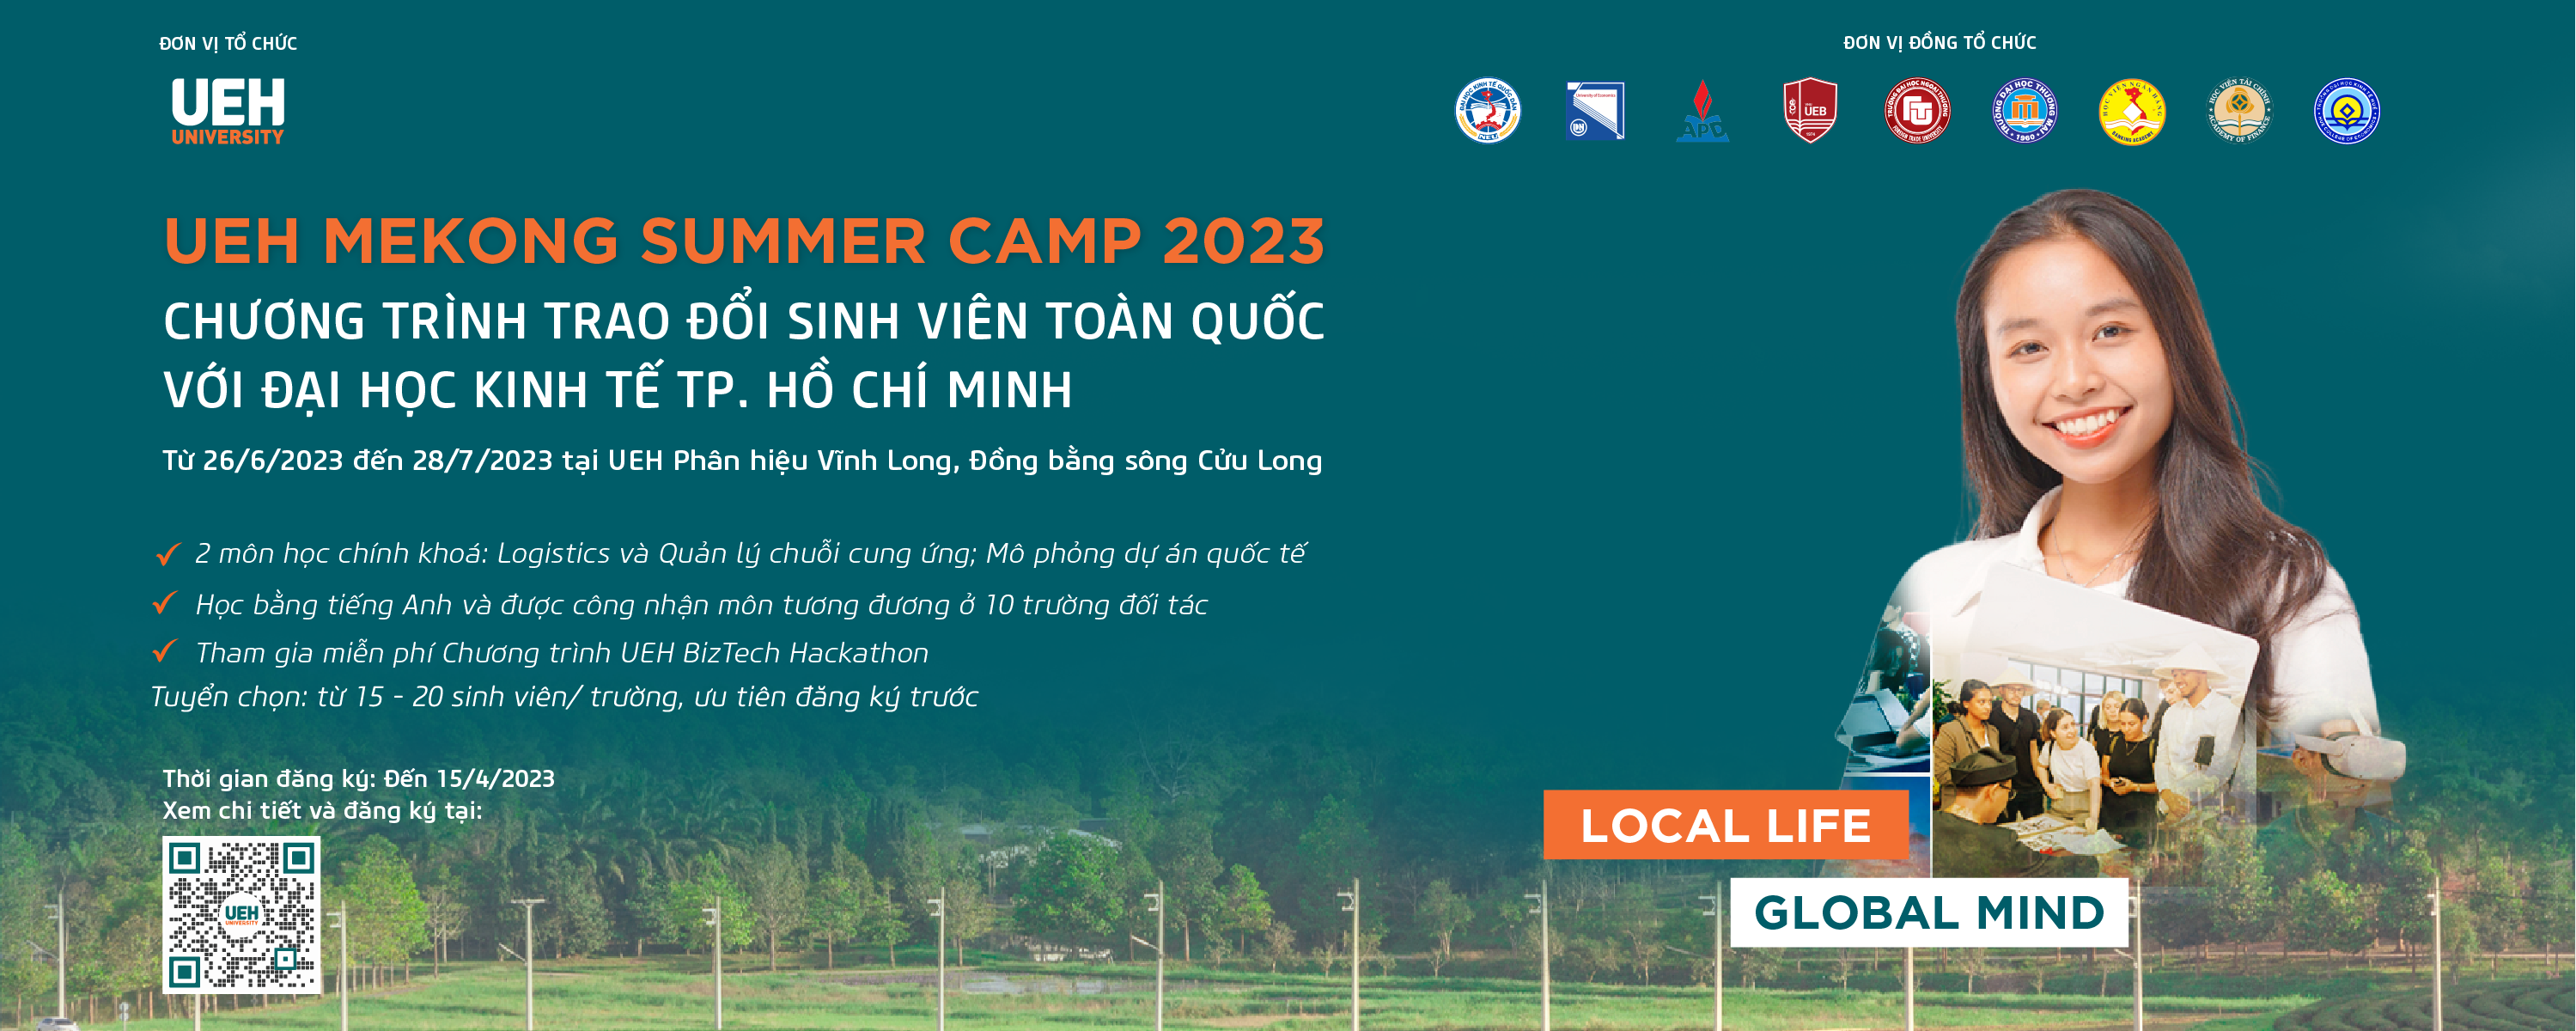 Trường Đại học Kinh tế TP. Hồ Chí Minh (UEH) triển khai Chương trình trao đổi sinh viên “UEH MEKONG SUMMER CAMP 2023 – Local Life, Global Mind”